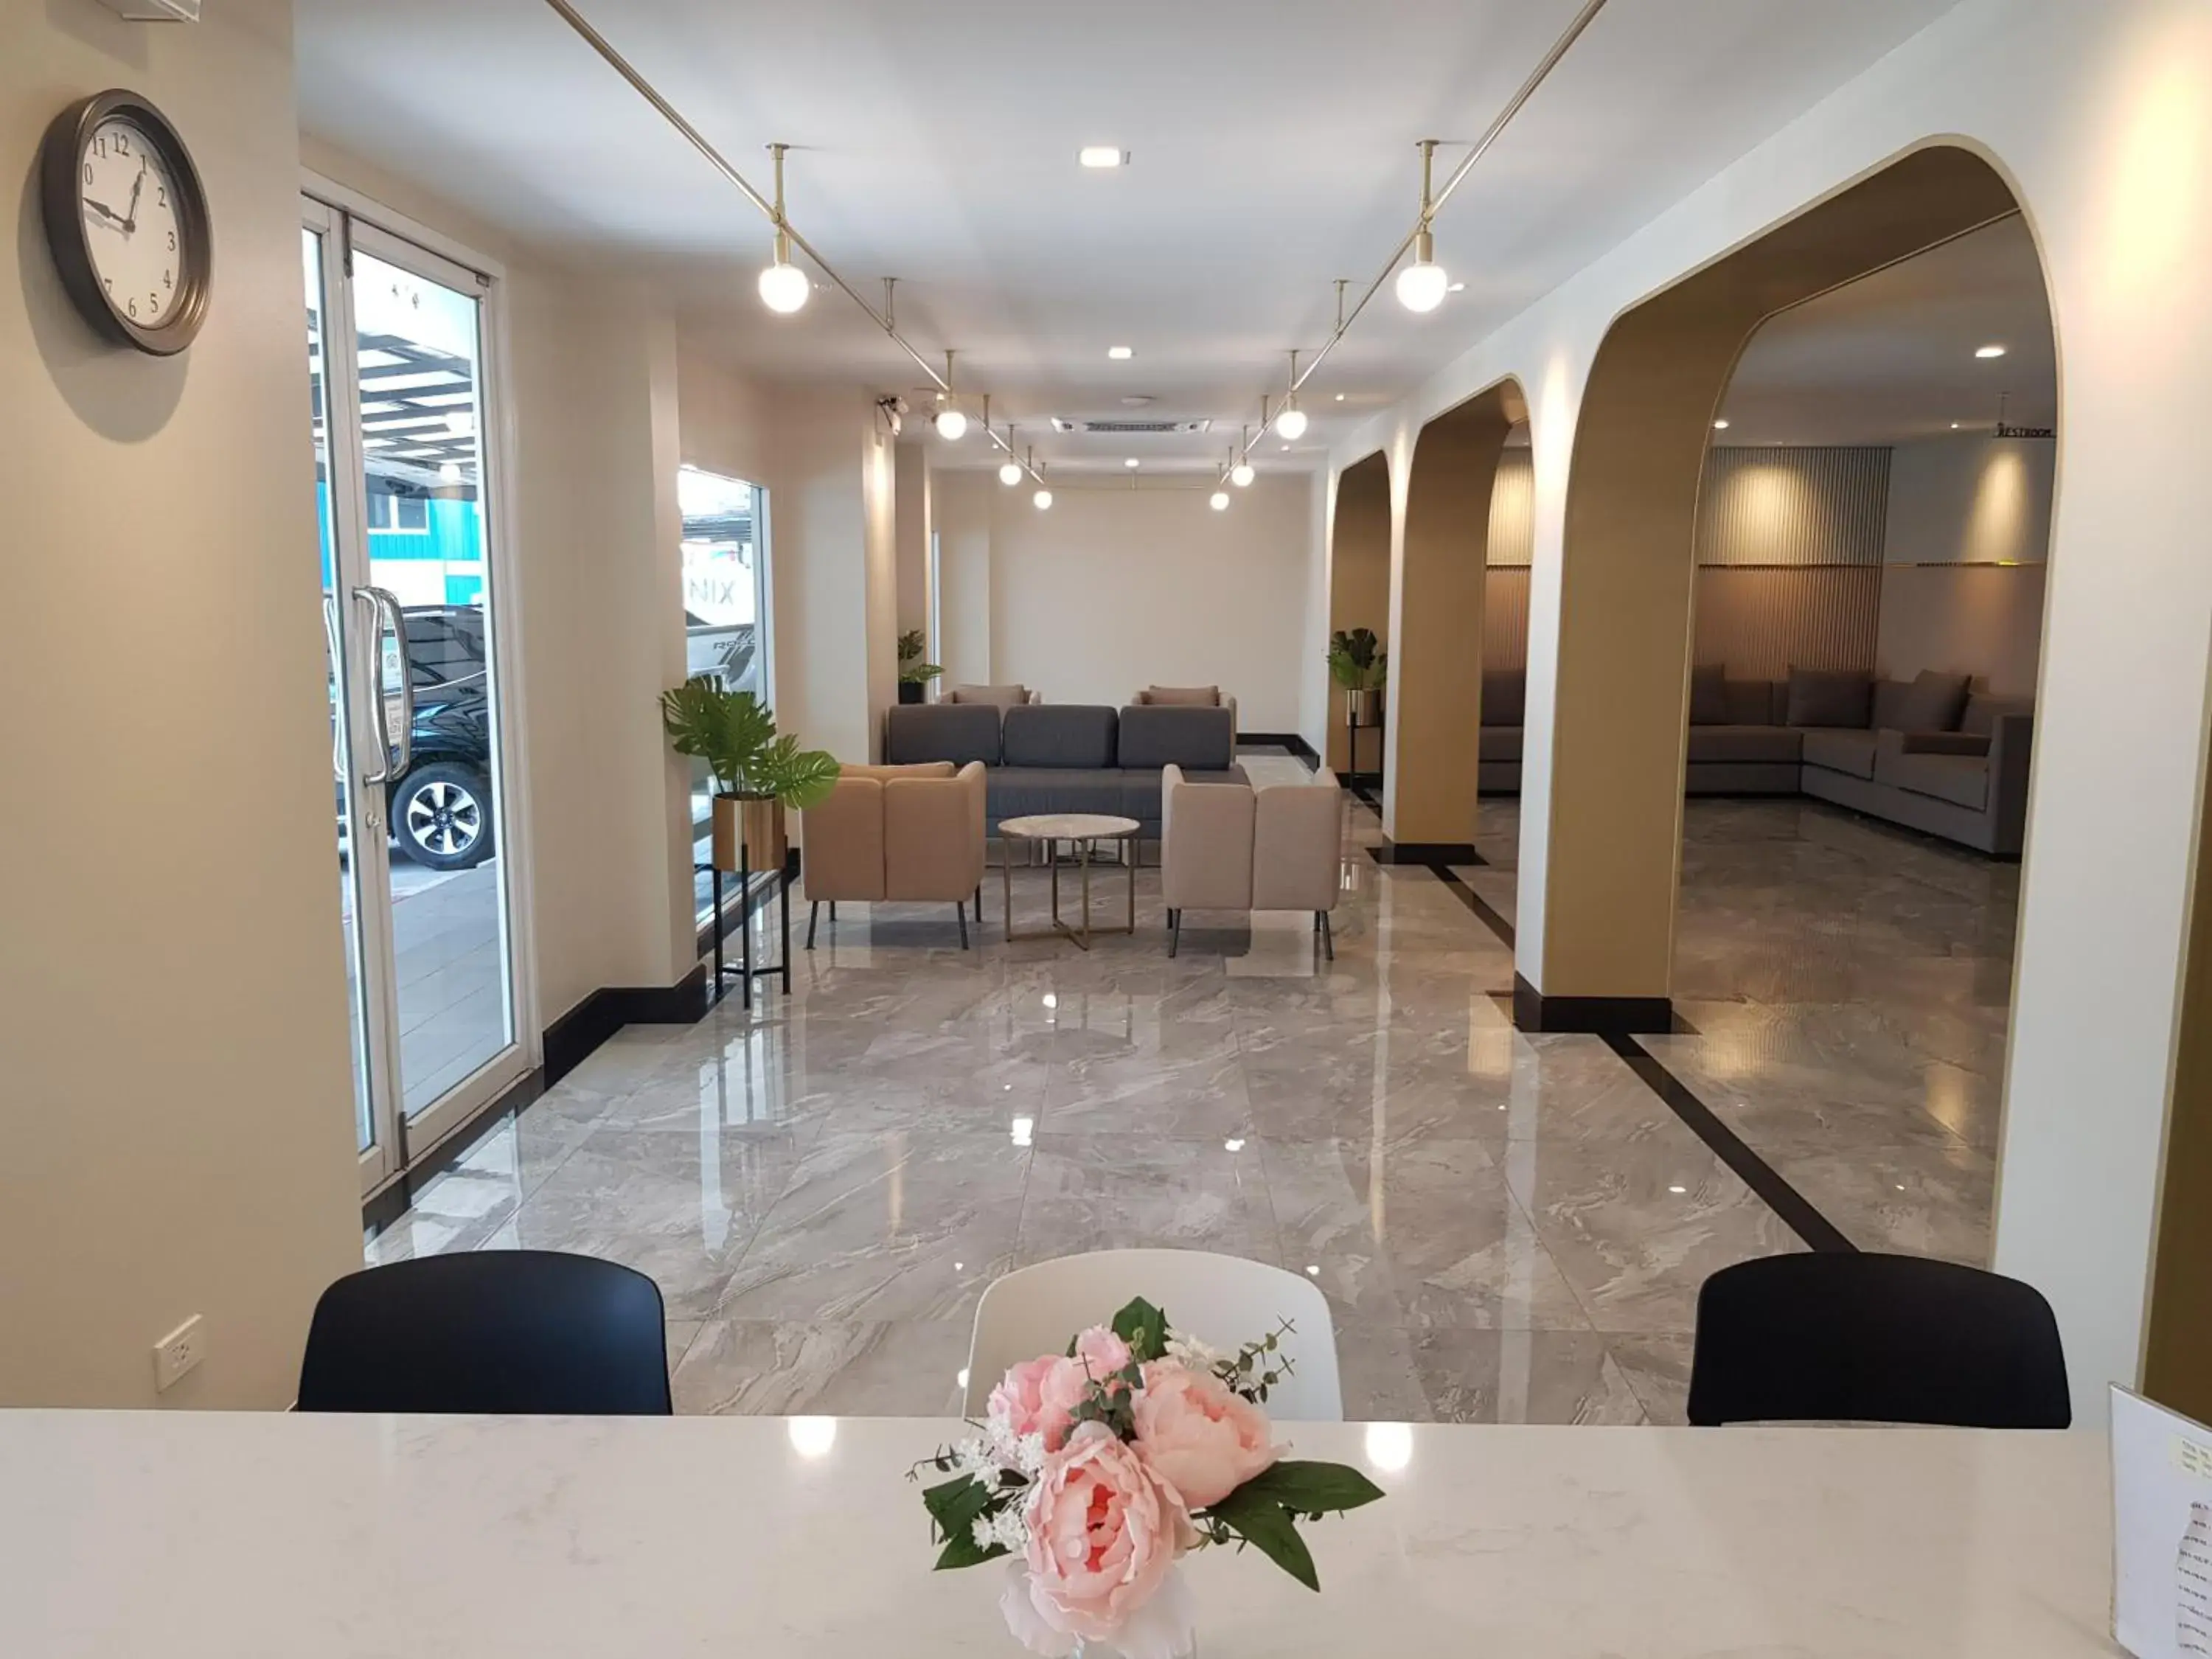 Lobby or reception, Lobby/Reception in The Phoenix Hotel Bangkok - Suvarnabhumi Airport